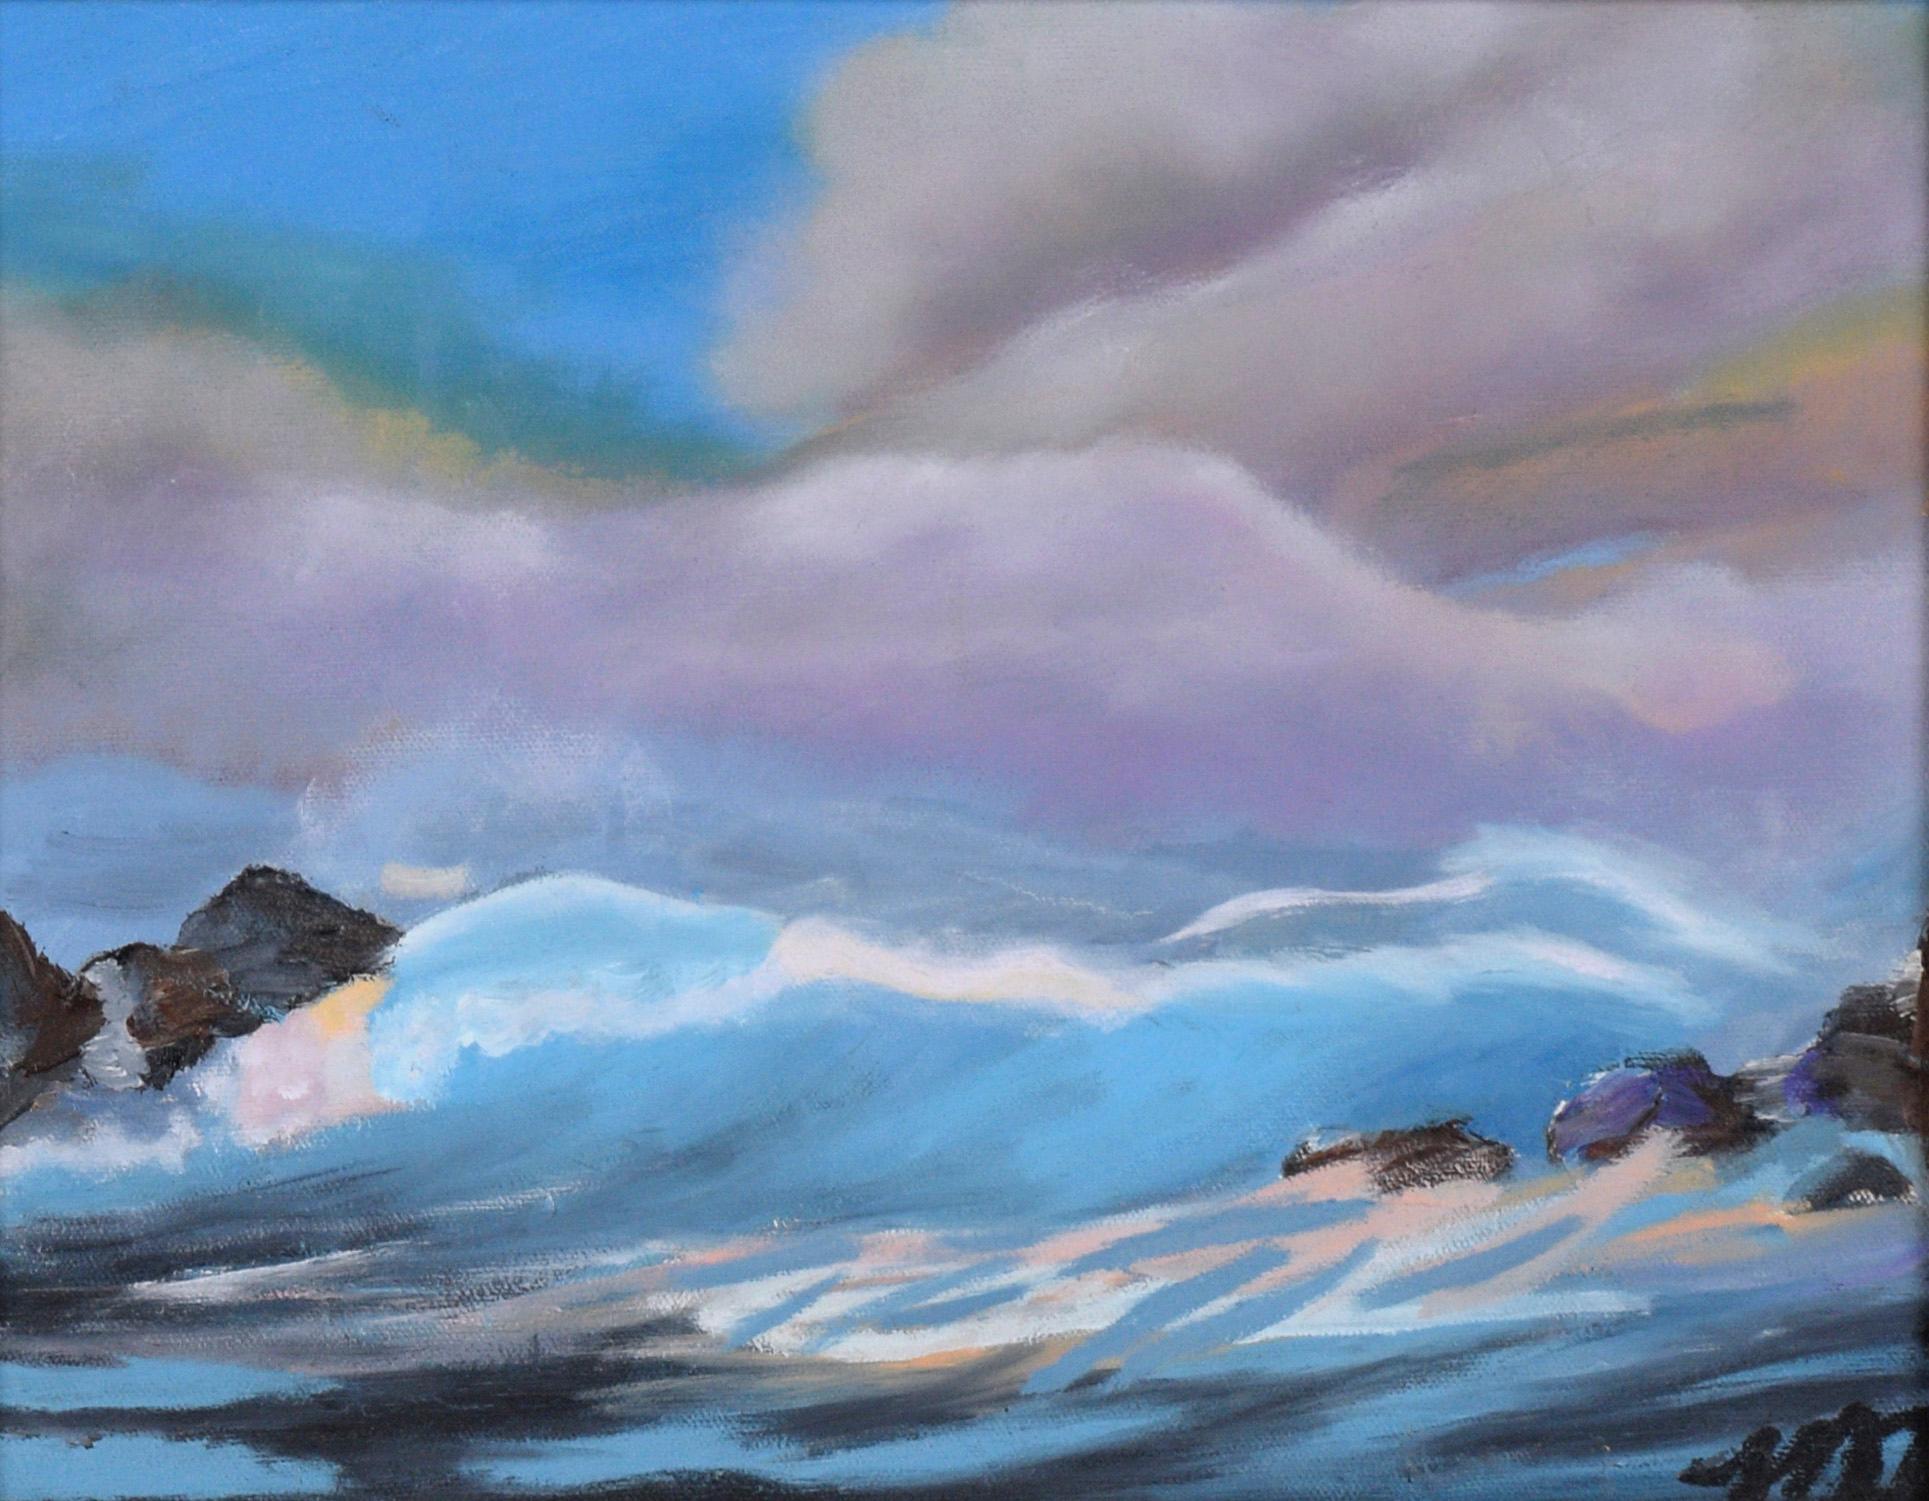 Waves Crashing Under Purple Clouds – Meereslandschaft, Original, Öl auf Leinwand – Painting von Mai Tracy Kikuchi